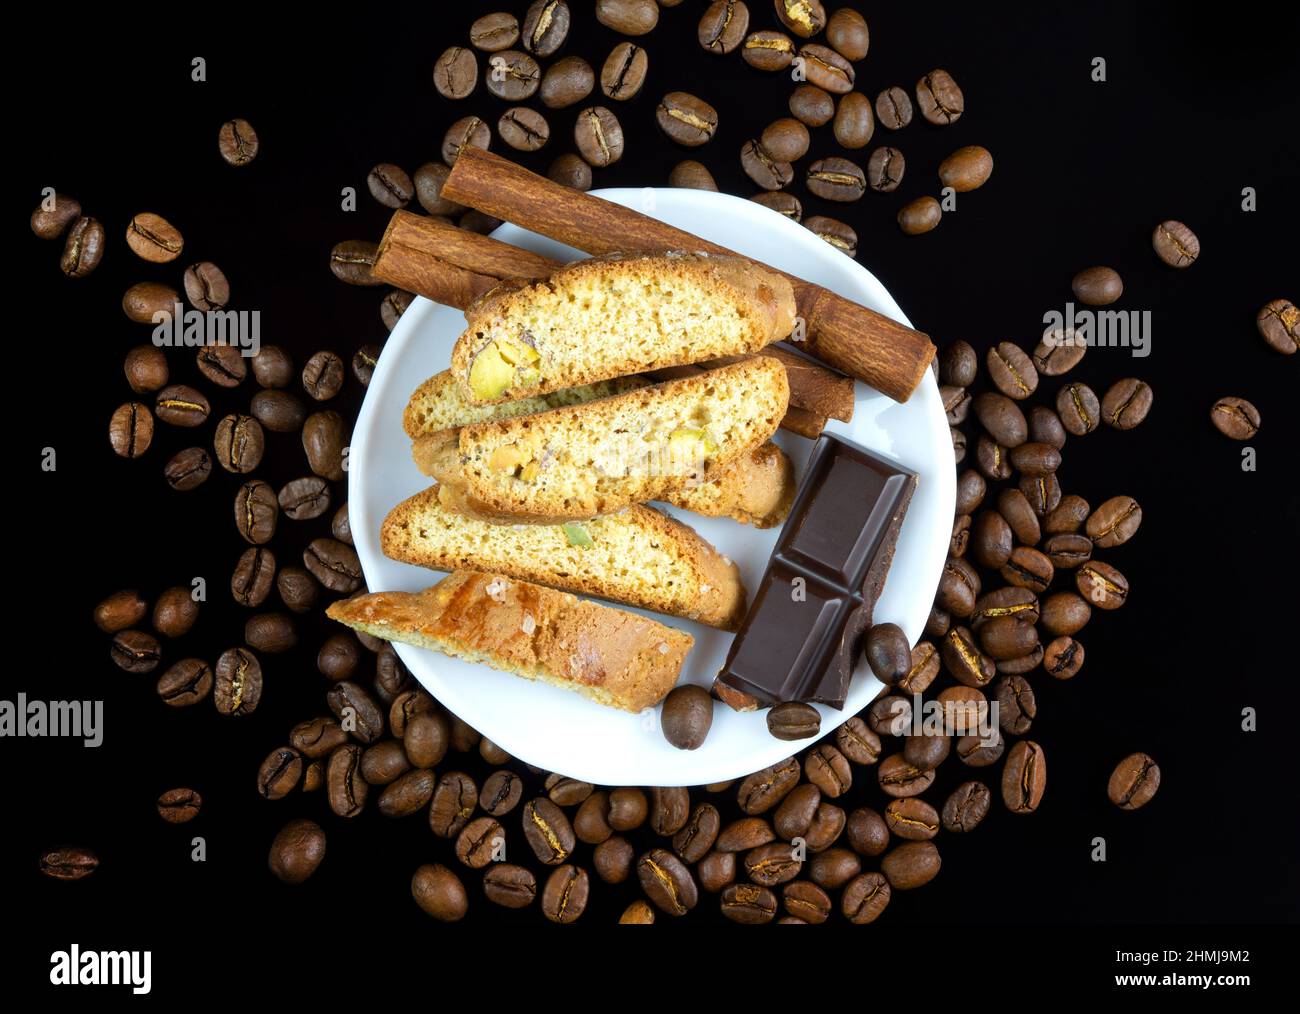 Bâtonnets de Cinnanon, chocolat et bisquits dans une plaque blanche entourée de grains de café sur fond réfléchissant noir Banque D'Images